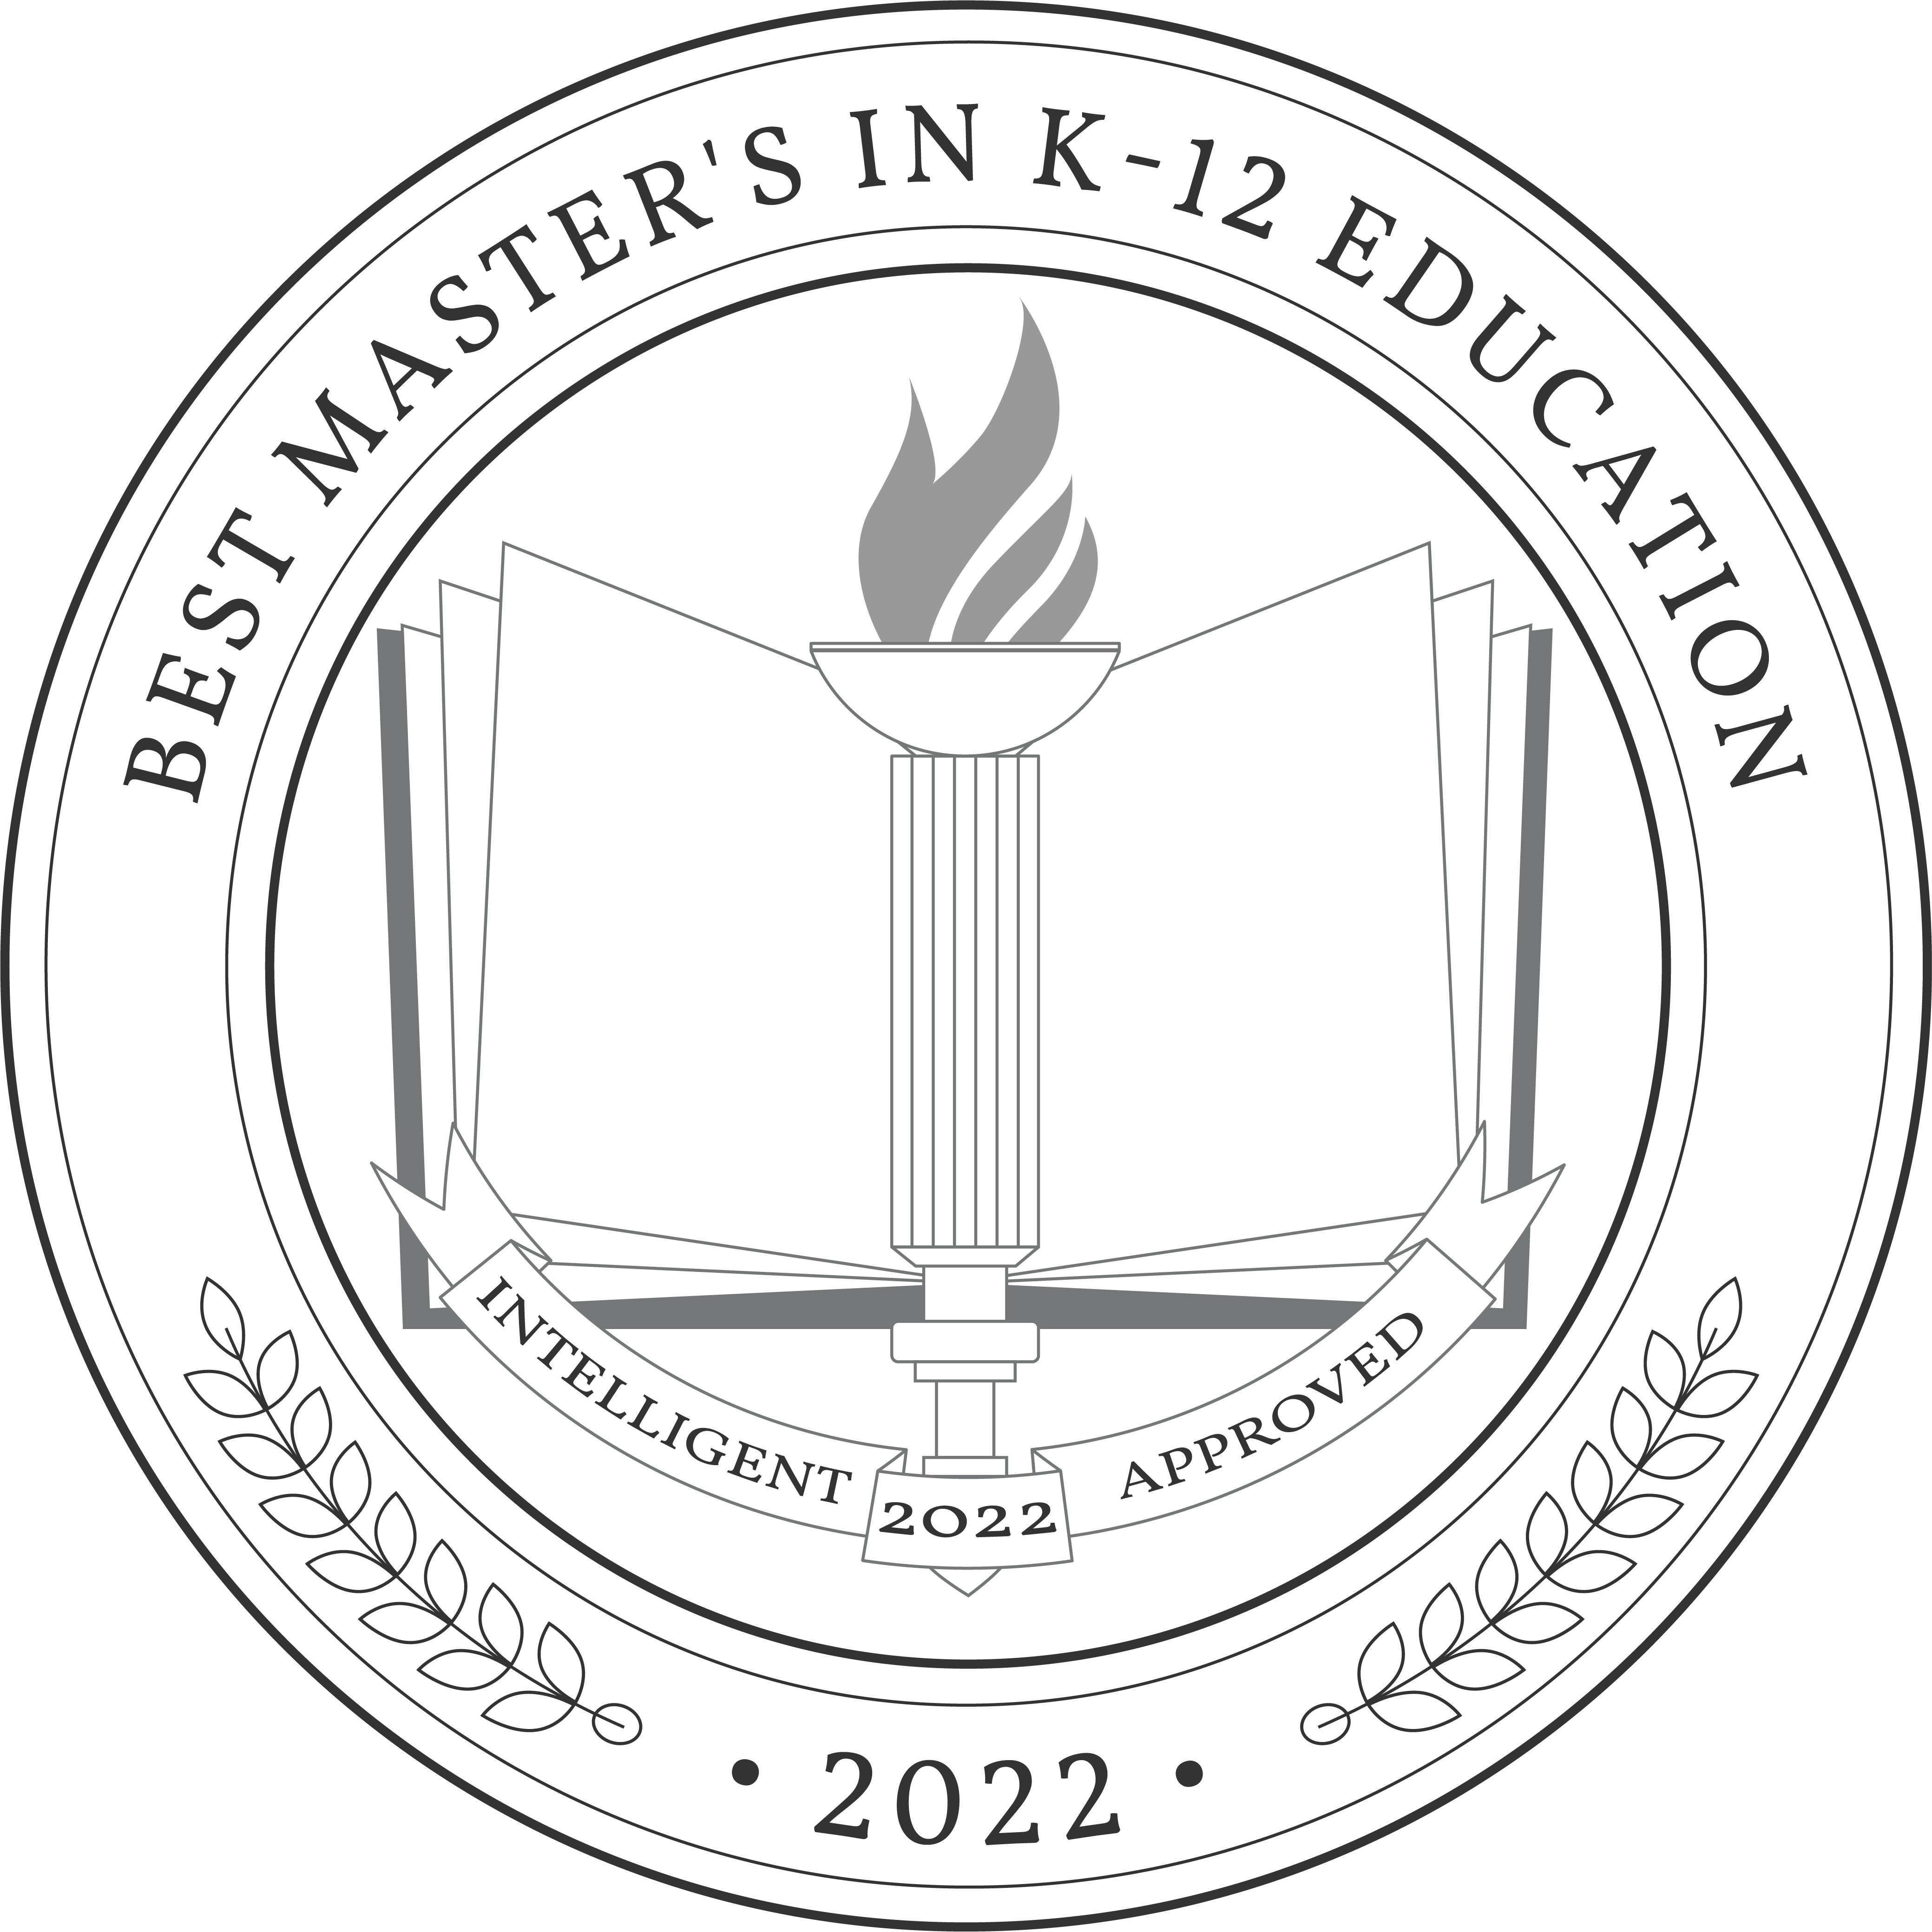 Best Online Master's in K-12 Education Degree Programs